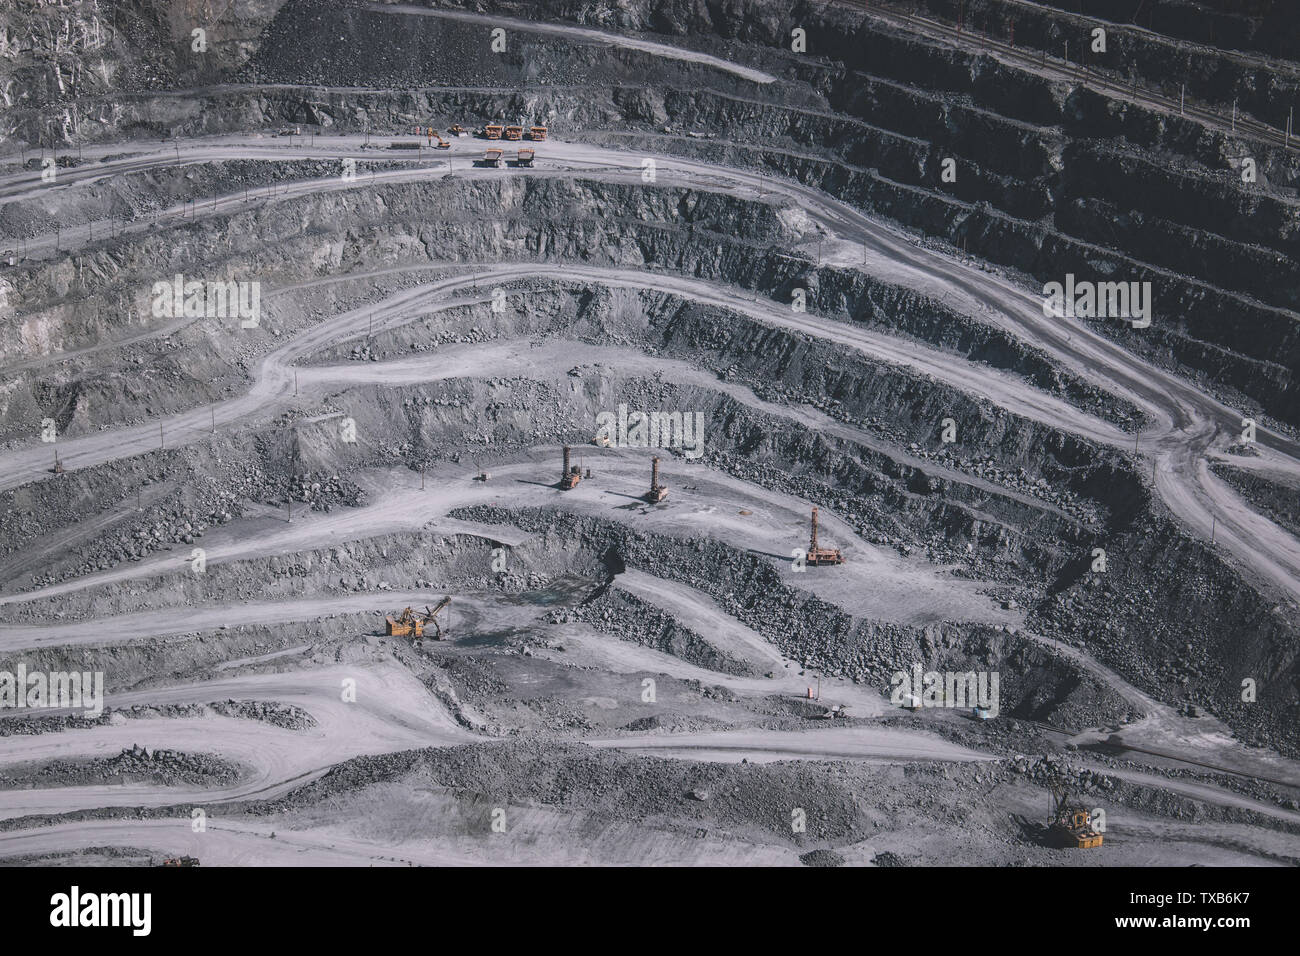 Vista aérea de la minería a cielo abierto cantera industrial con mucha de la maquinaria en el trabajo - vista desde arriba. Extracción de cal, tiza, calx, caol Foto de stock